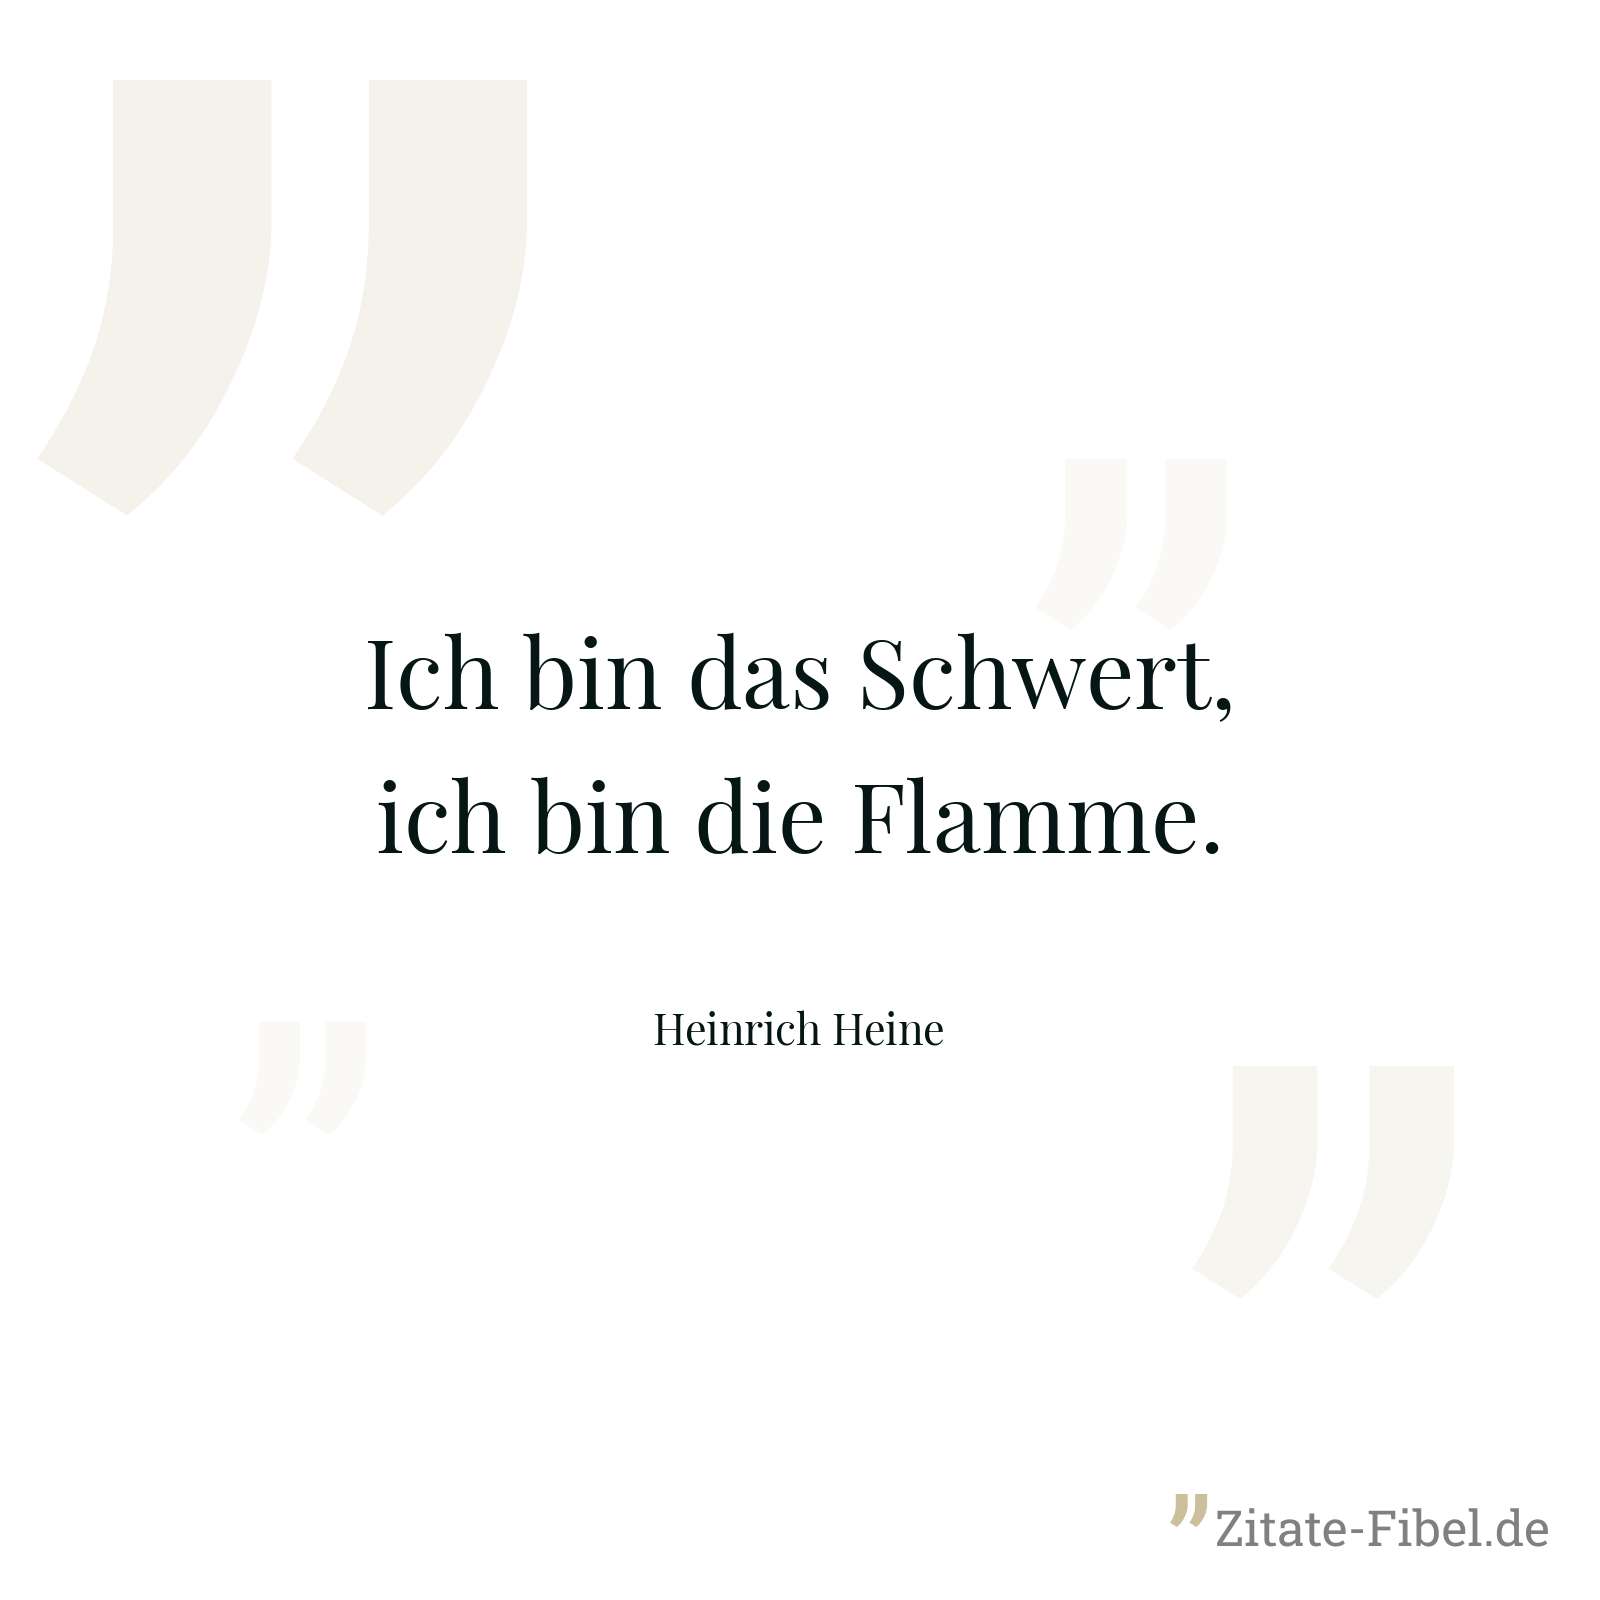 Ich bin das Schwert, ich bin die Flamme. - Heinrich Heine